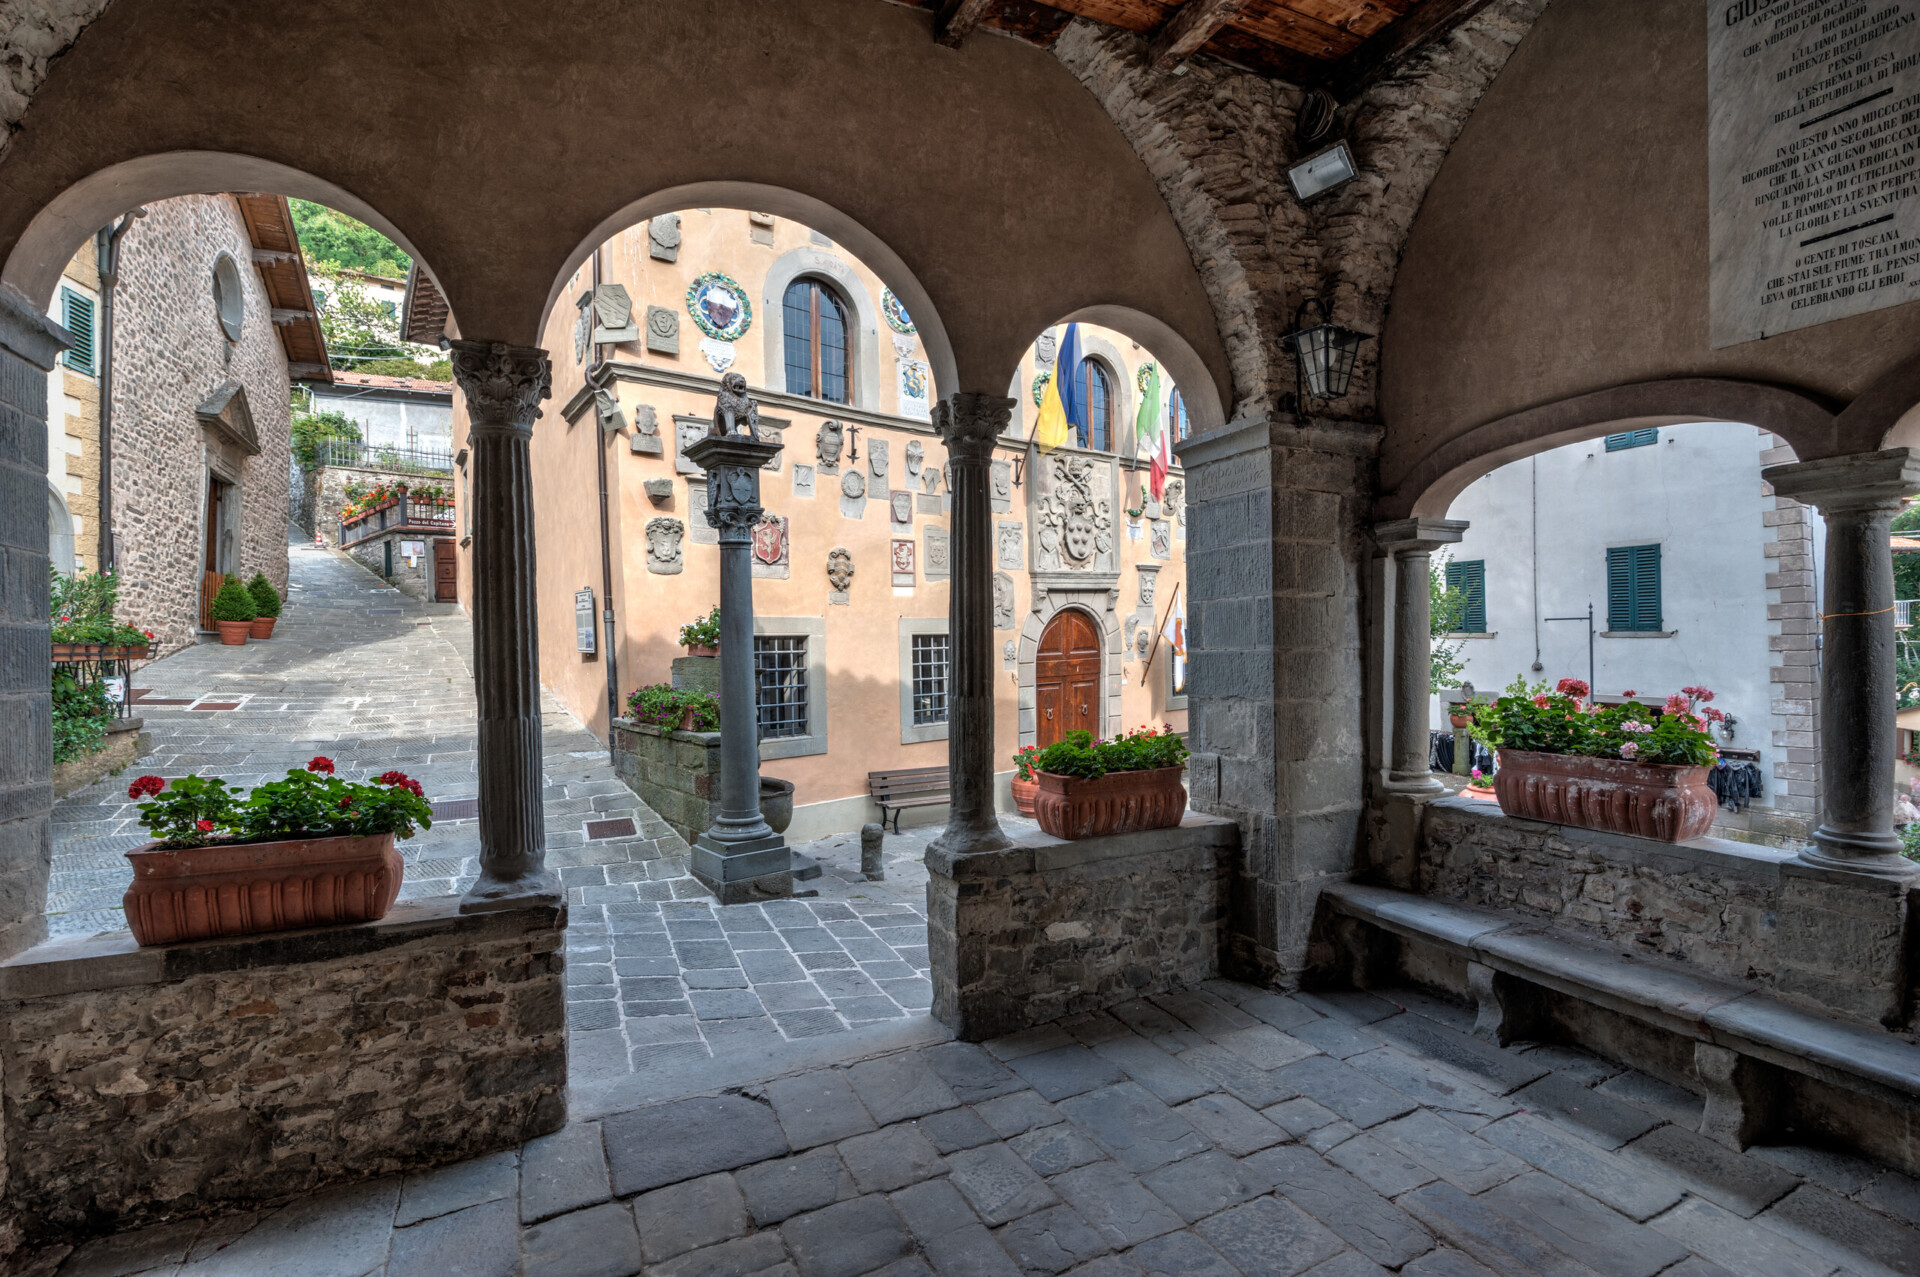 The medieval village of Cutigliano, the Palazzo di Giustizia and the little lodge in front of it